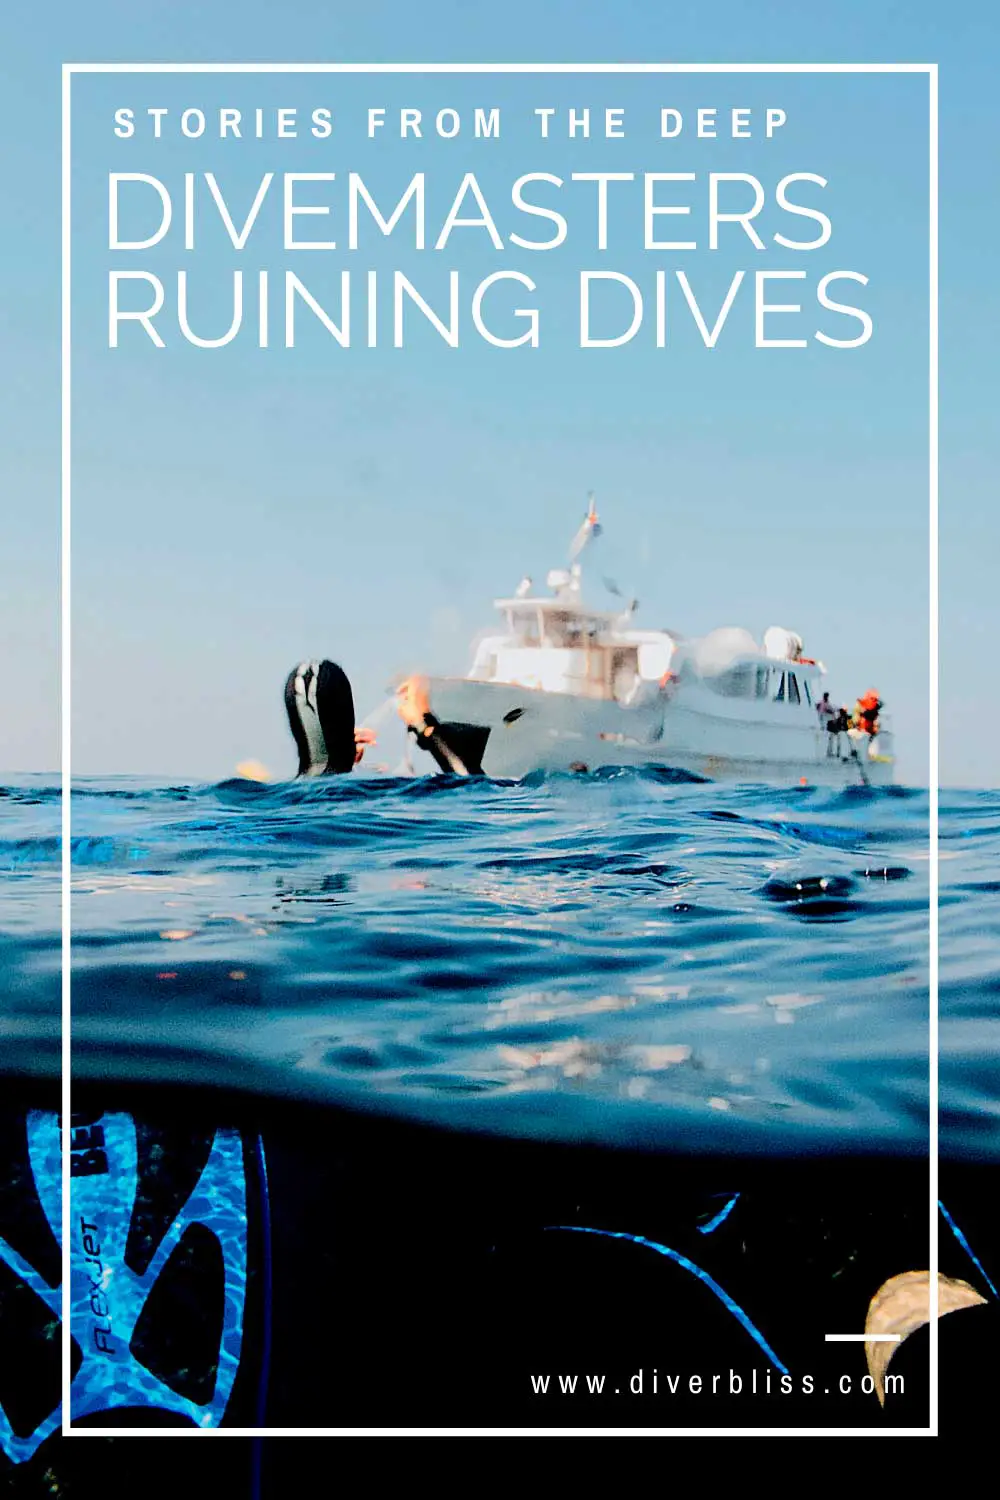 worst divemasters ruining dives